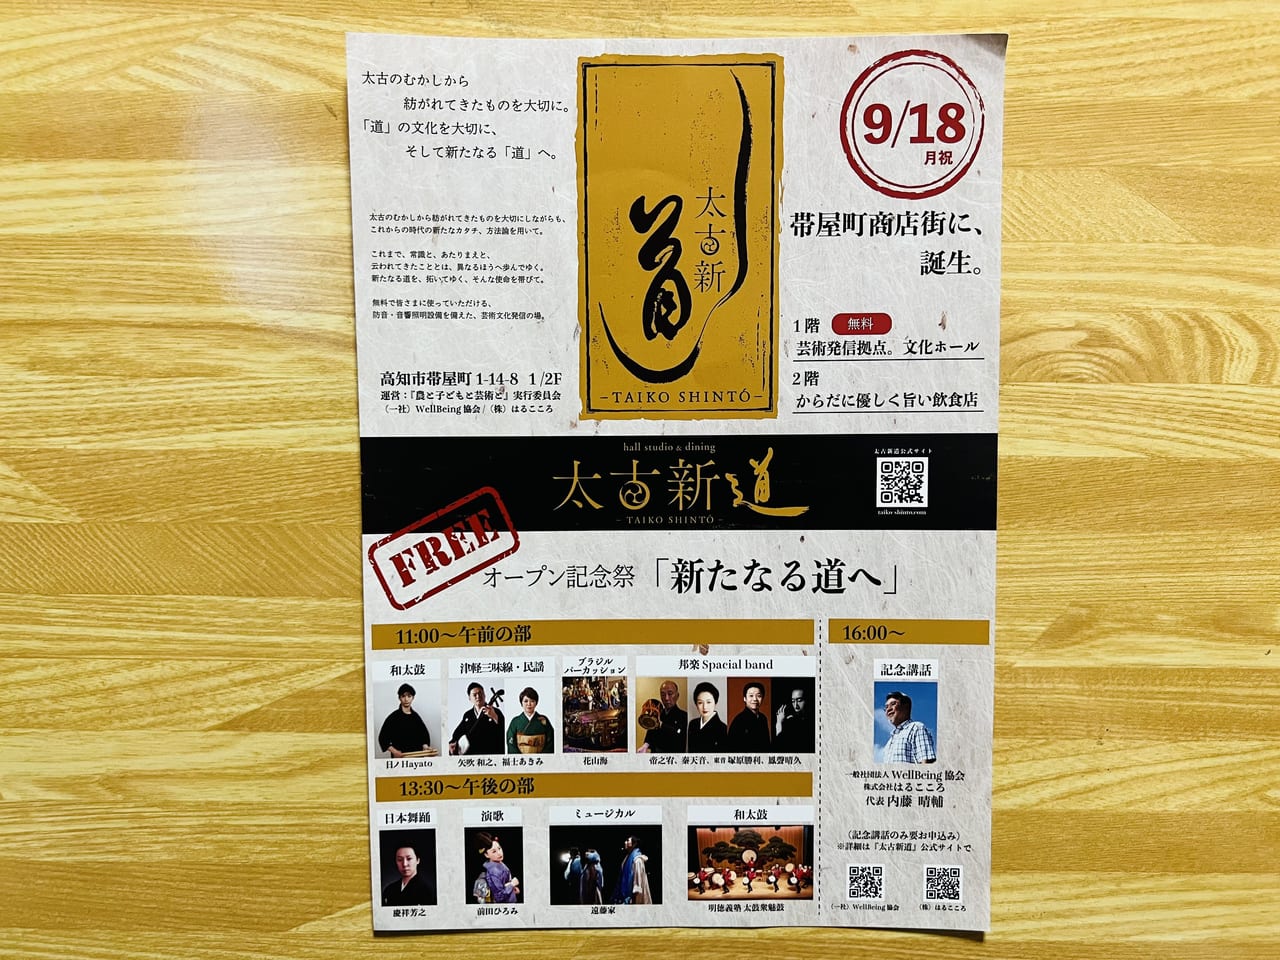 「太古新道ーTAIKO SHINTOー」オープンに関するチラシ